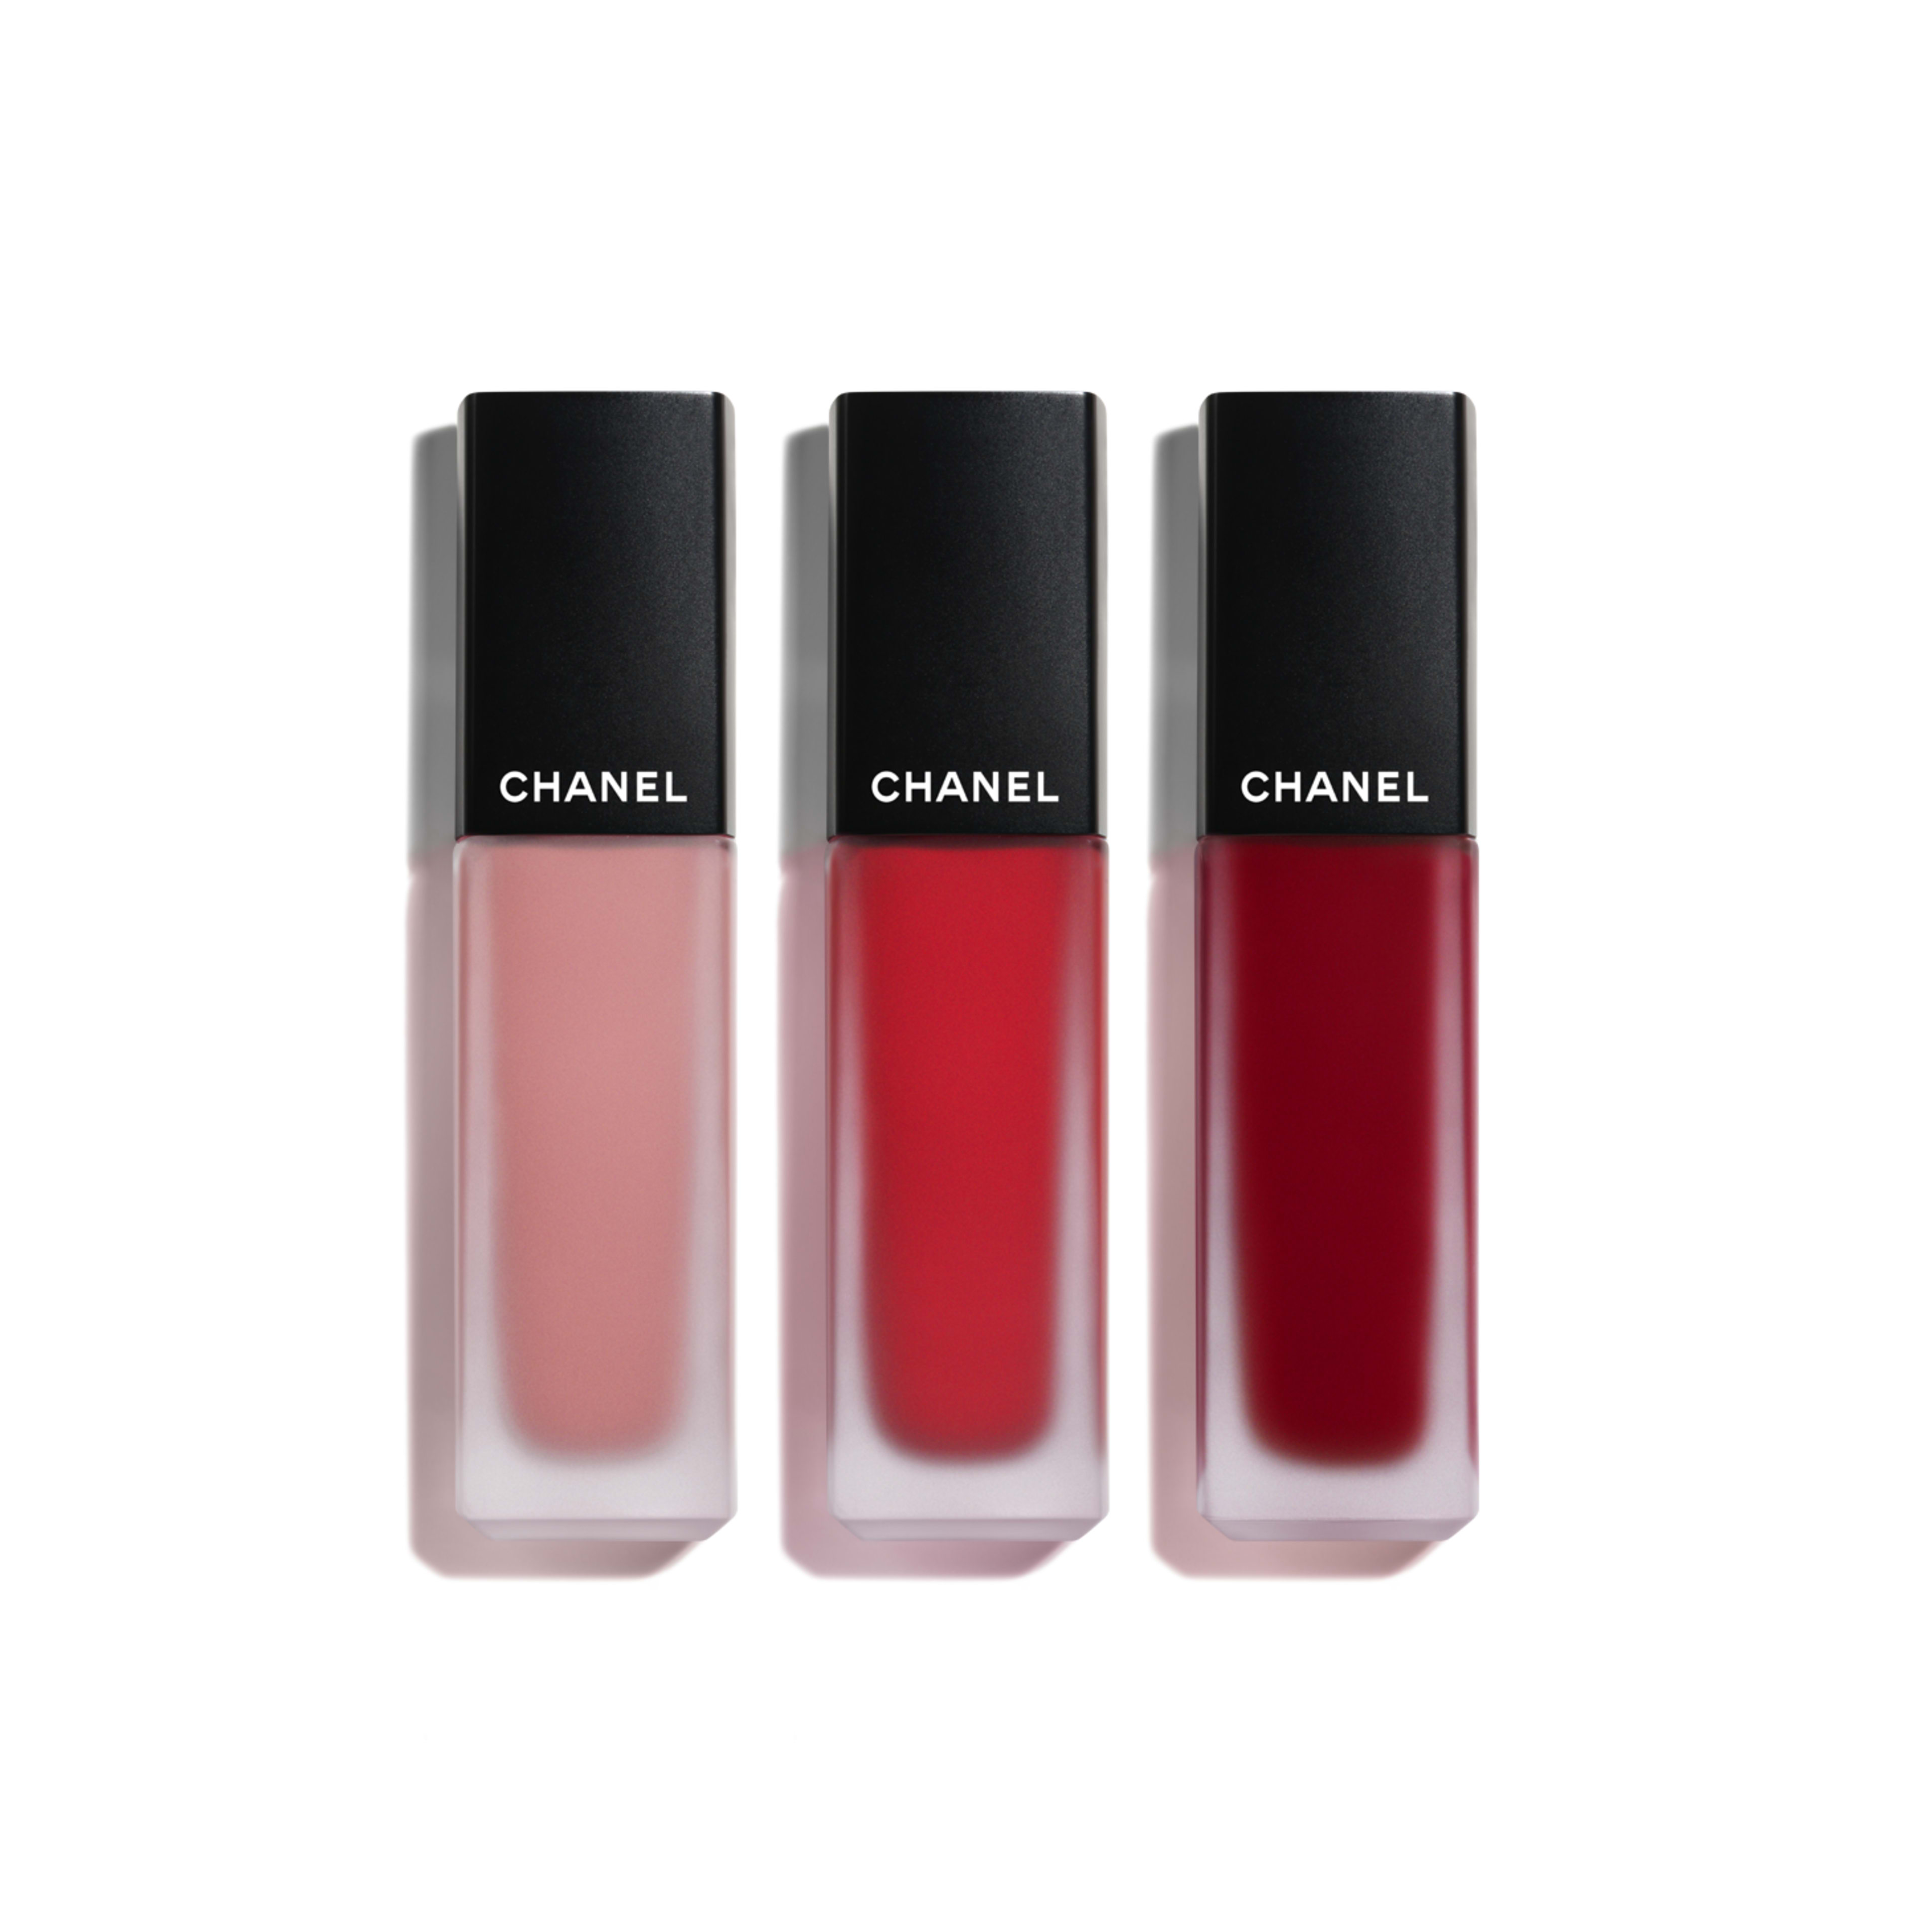 Kết quả hình ảnh cho CHANEL Beauty Rouge Allure Ink Fusion Ultrawear Intense Matte Liquid Lip Color màu 828 Rouge Allure